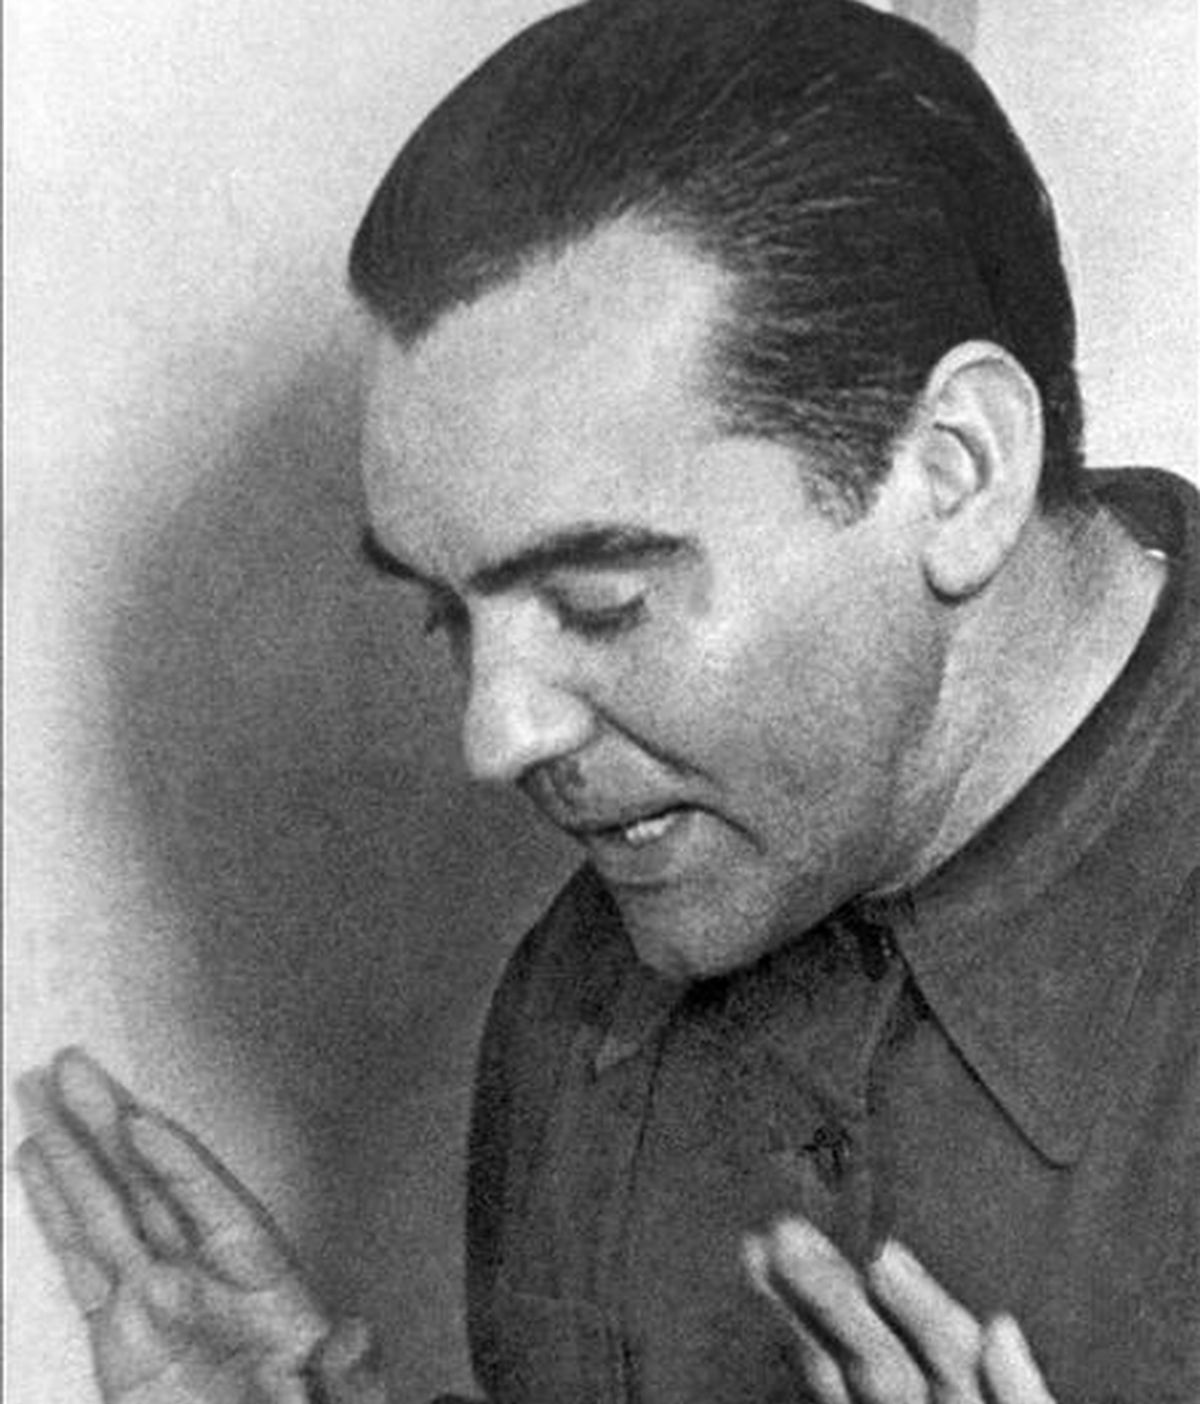 Fotografía sin fechar (aproximadamente en 1936), del poeta granadino Federico García Lorca. EFE/Archivo